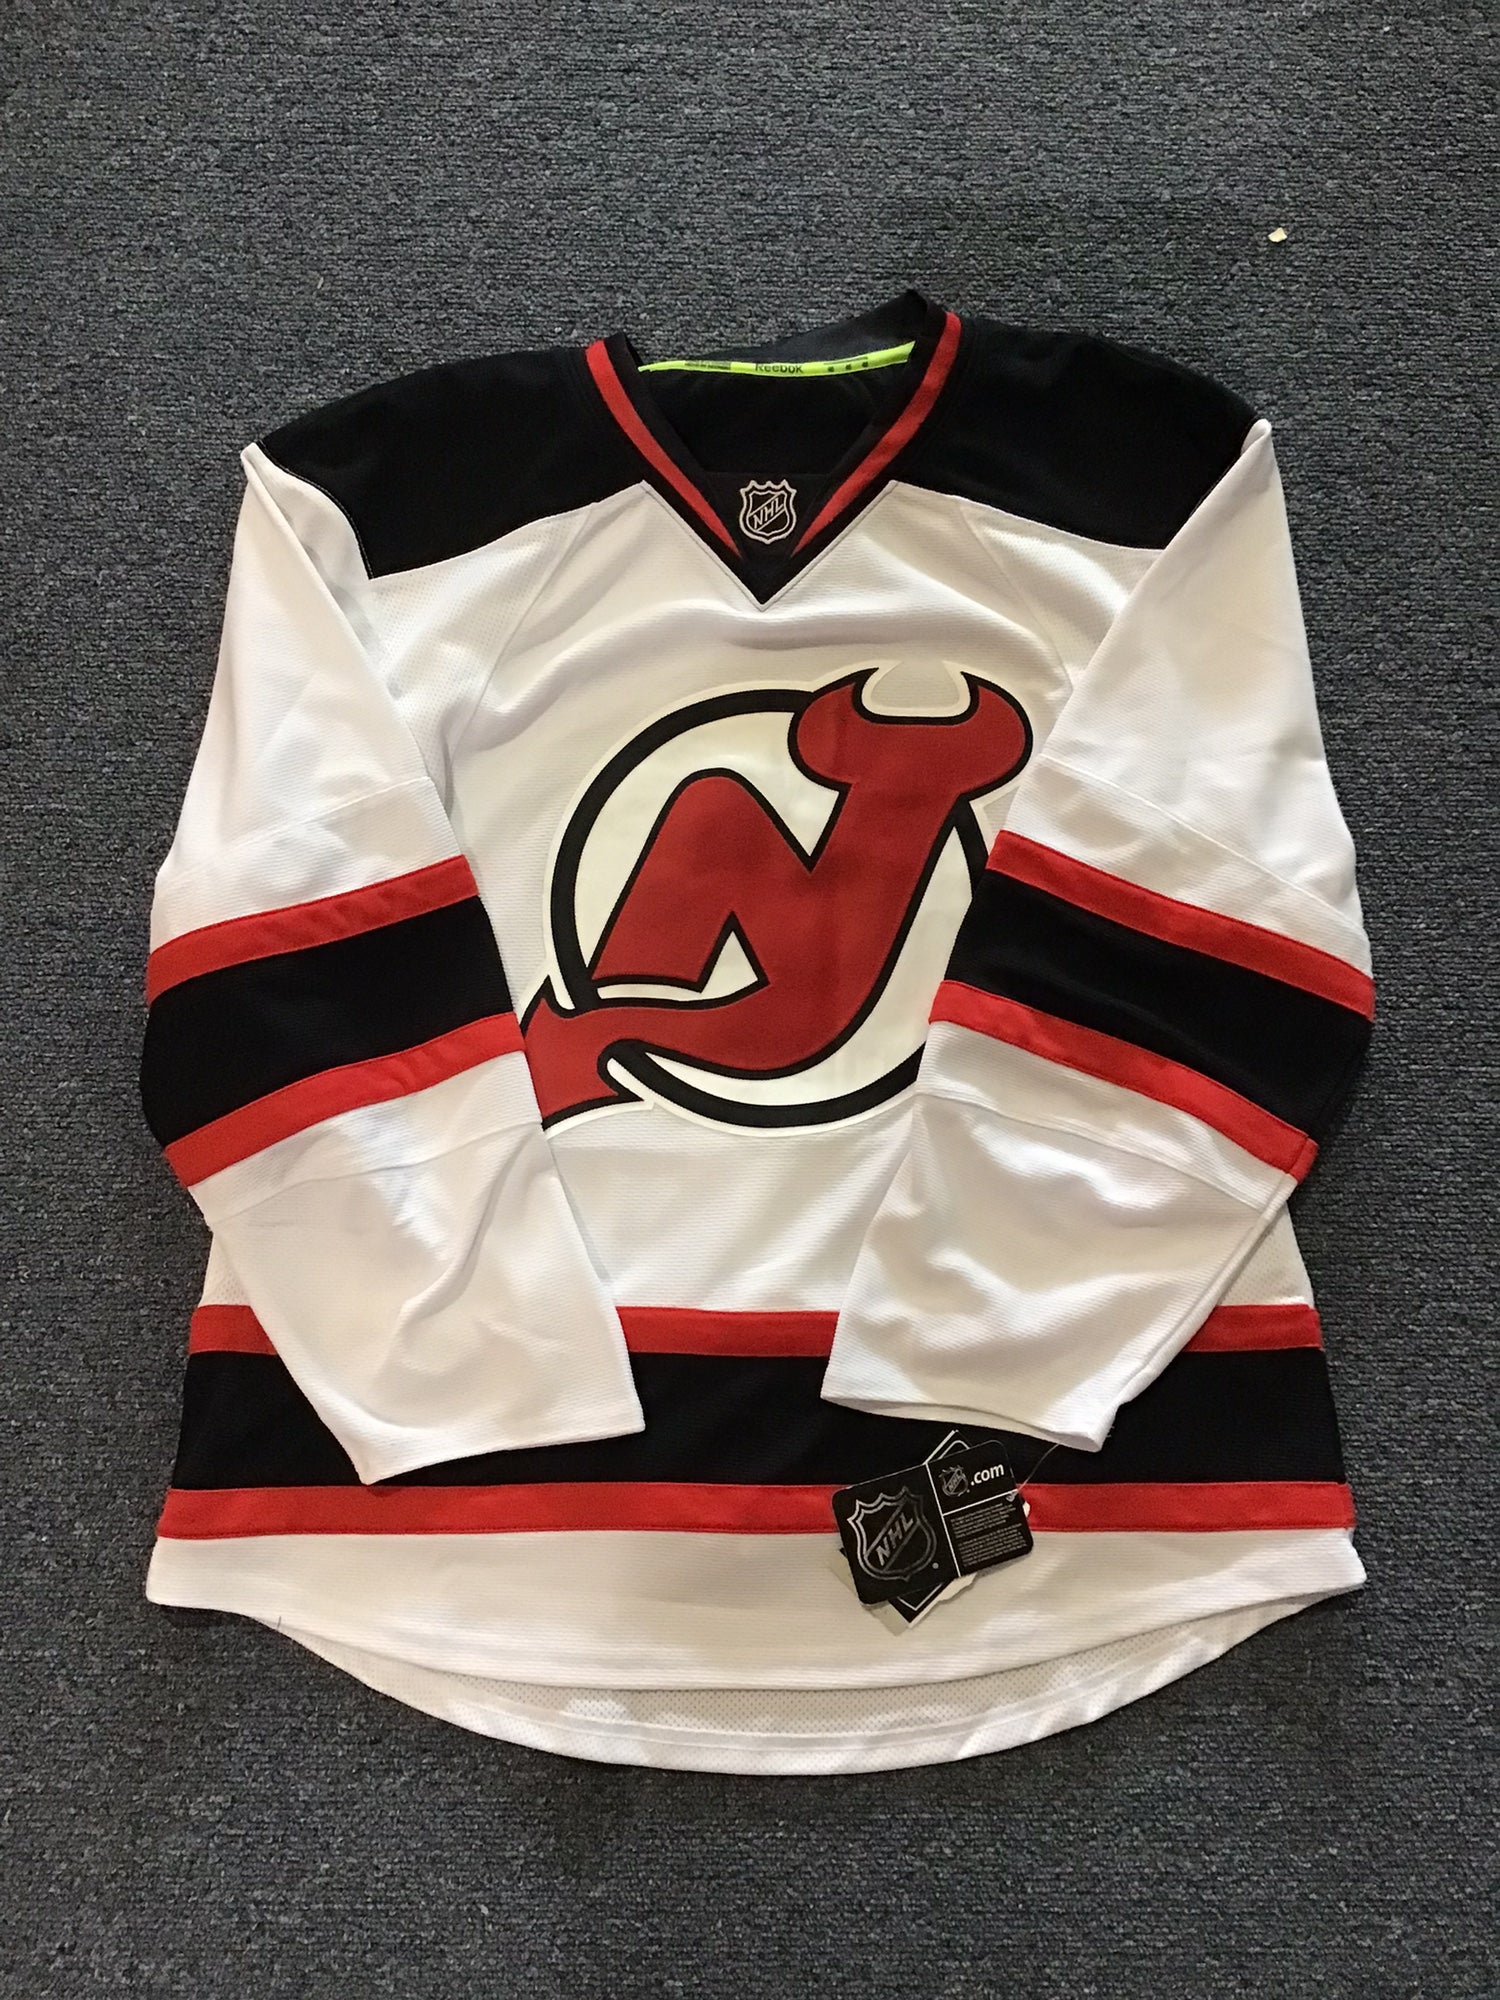 New Jersey Devils Merchandise, Devils Apparel, Jerseys & Gear